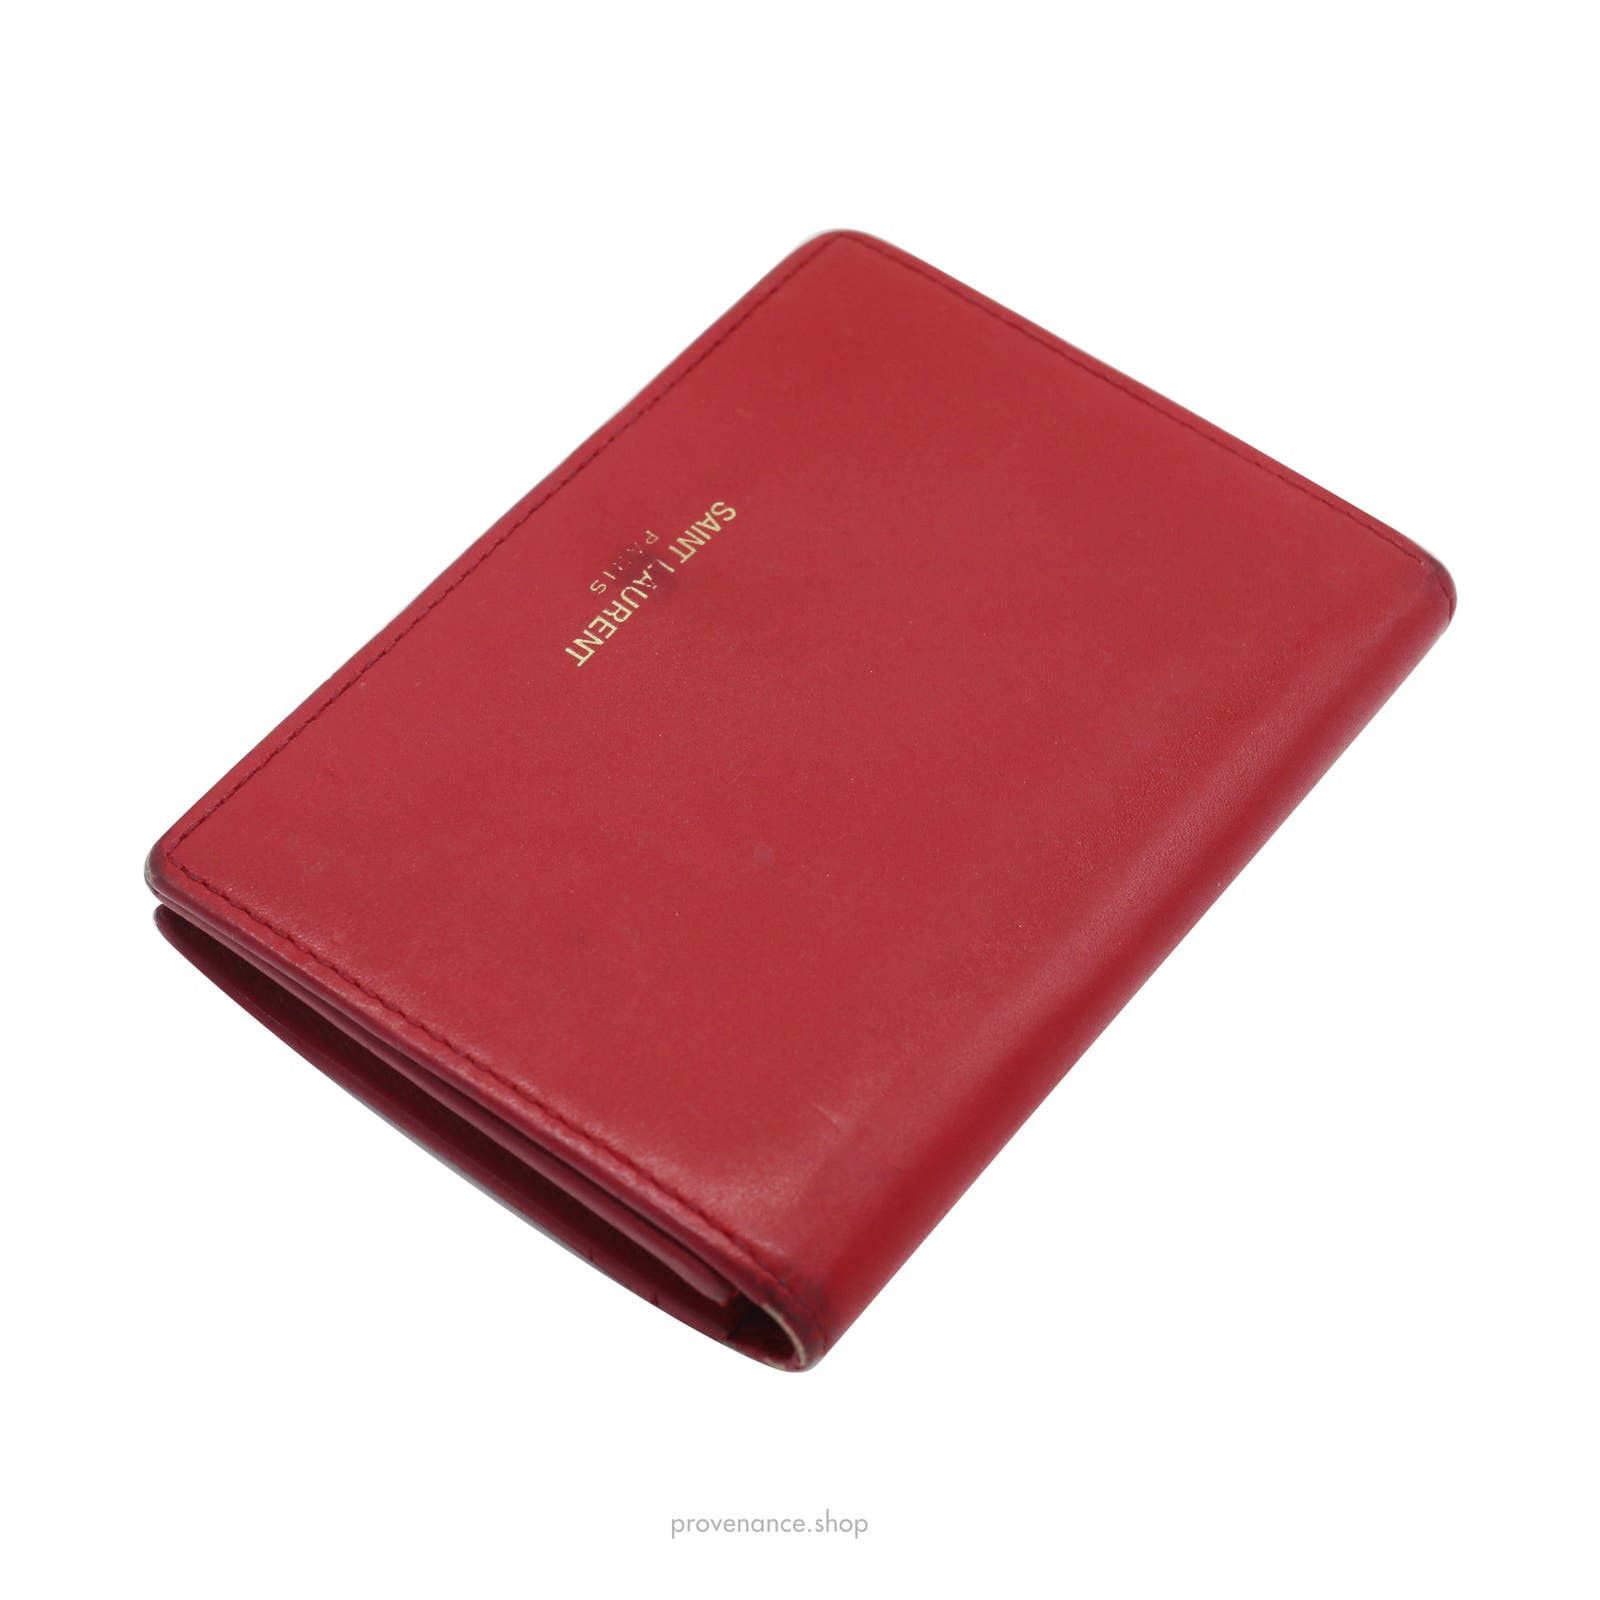 Saint Laurent Paris 🔴 Saint Laurent Paris SLP Card Holder - Poppy Red Leather Size ONE SIZE - 4 Thumbnail